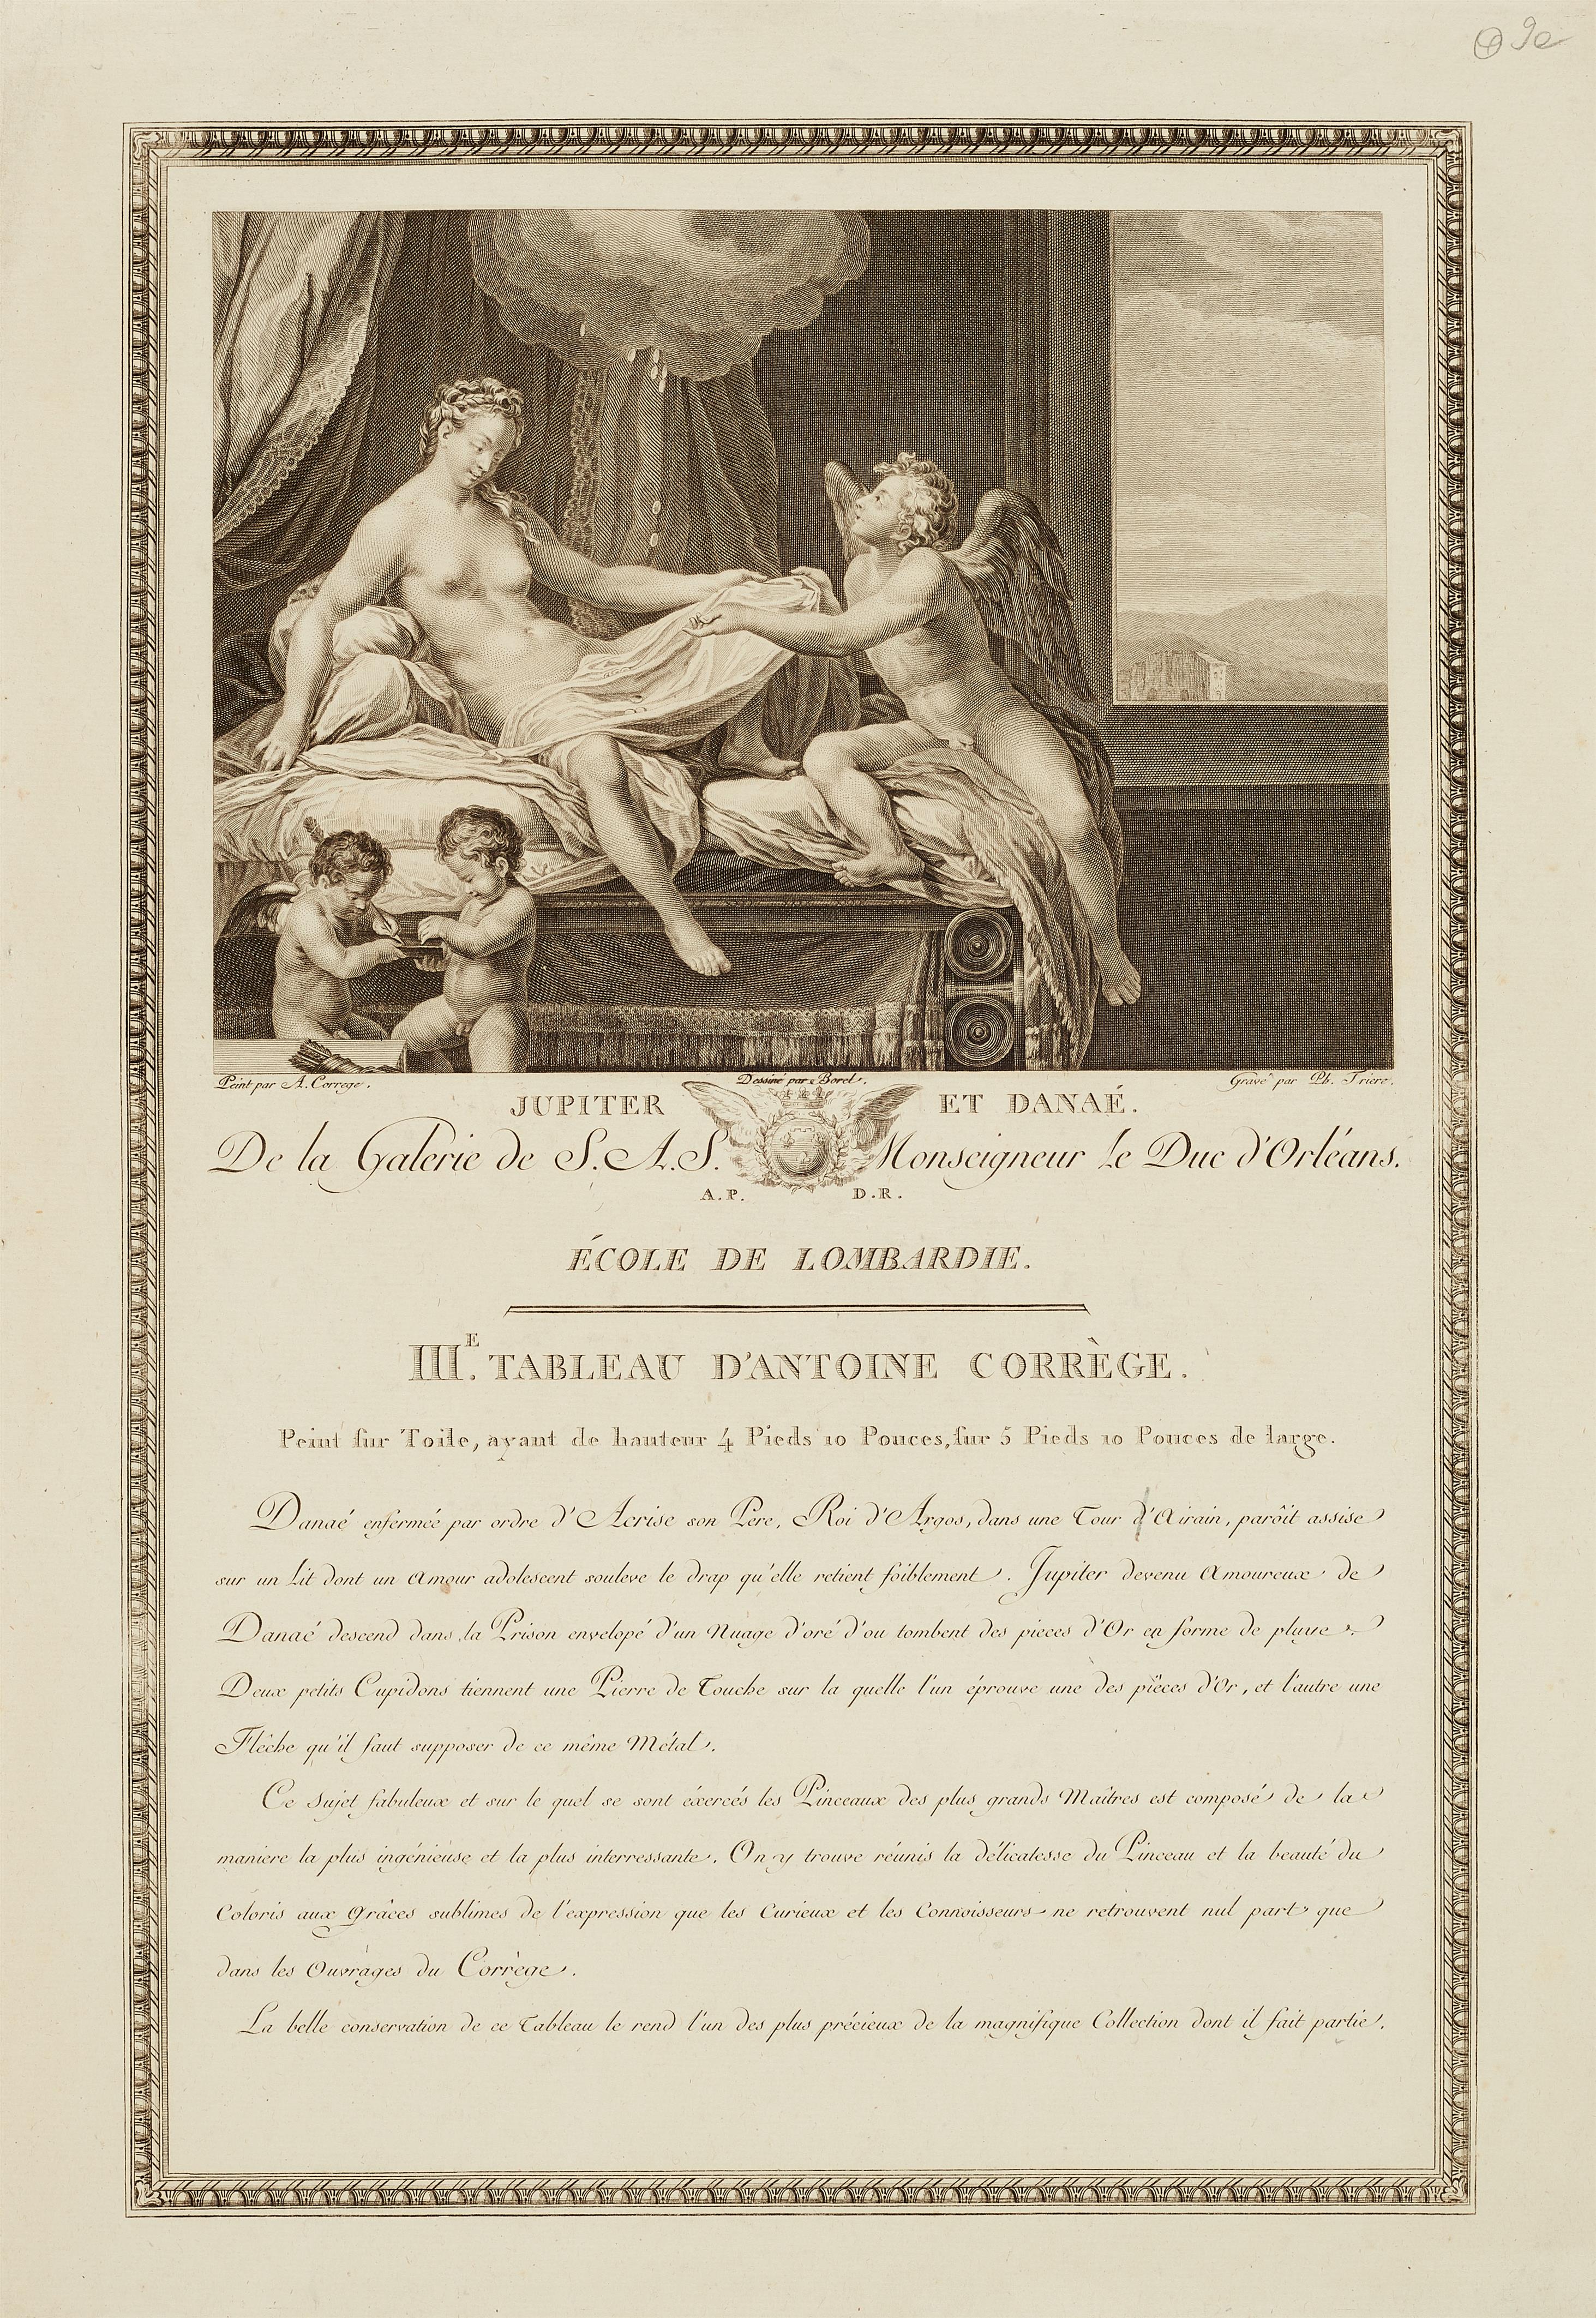 Danaë and the golden rain
Pierre Jouffroy, 1758. - image-2